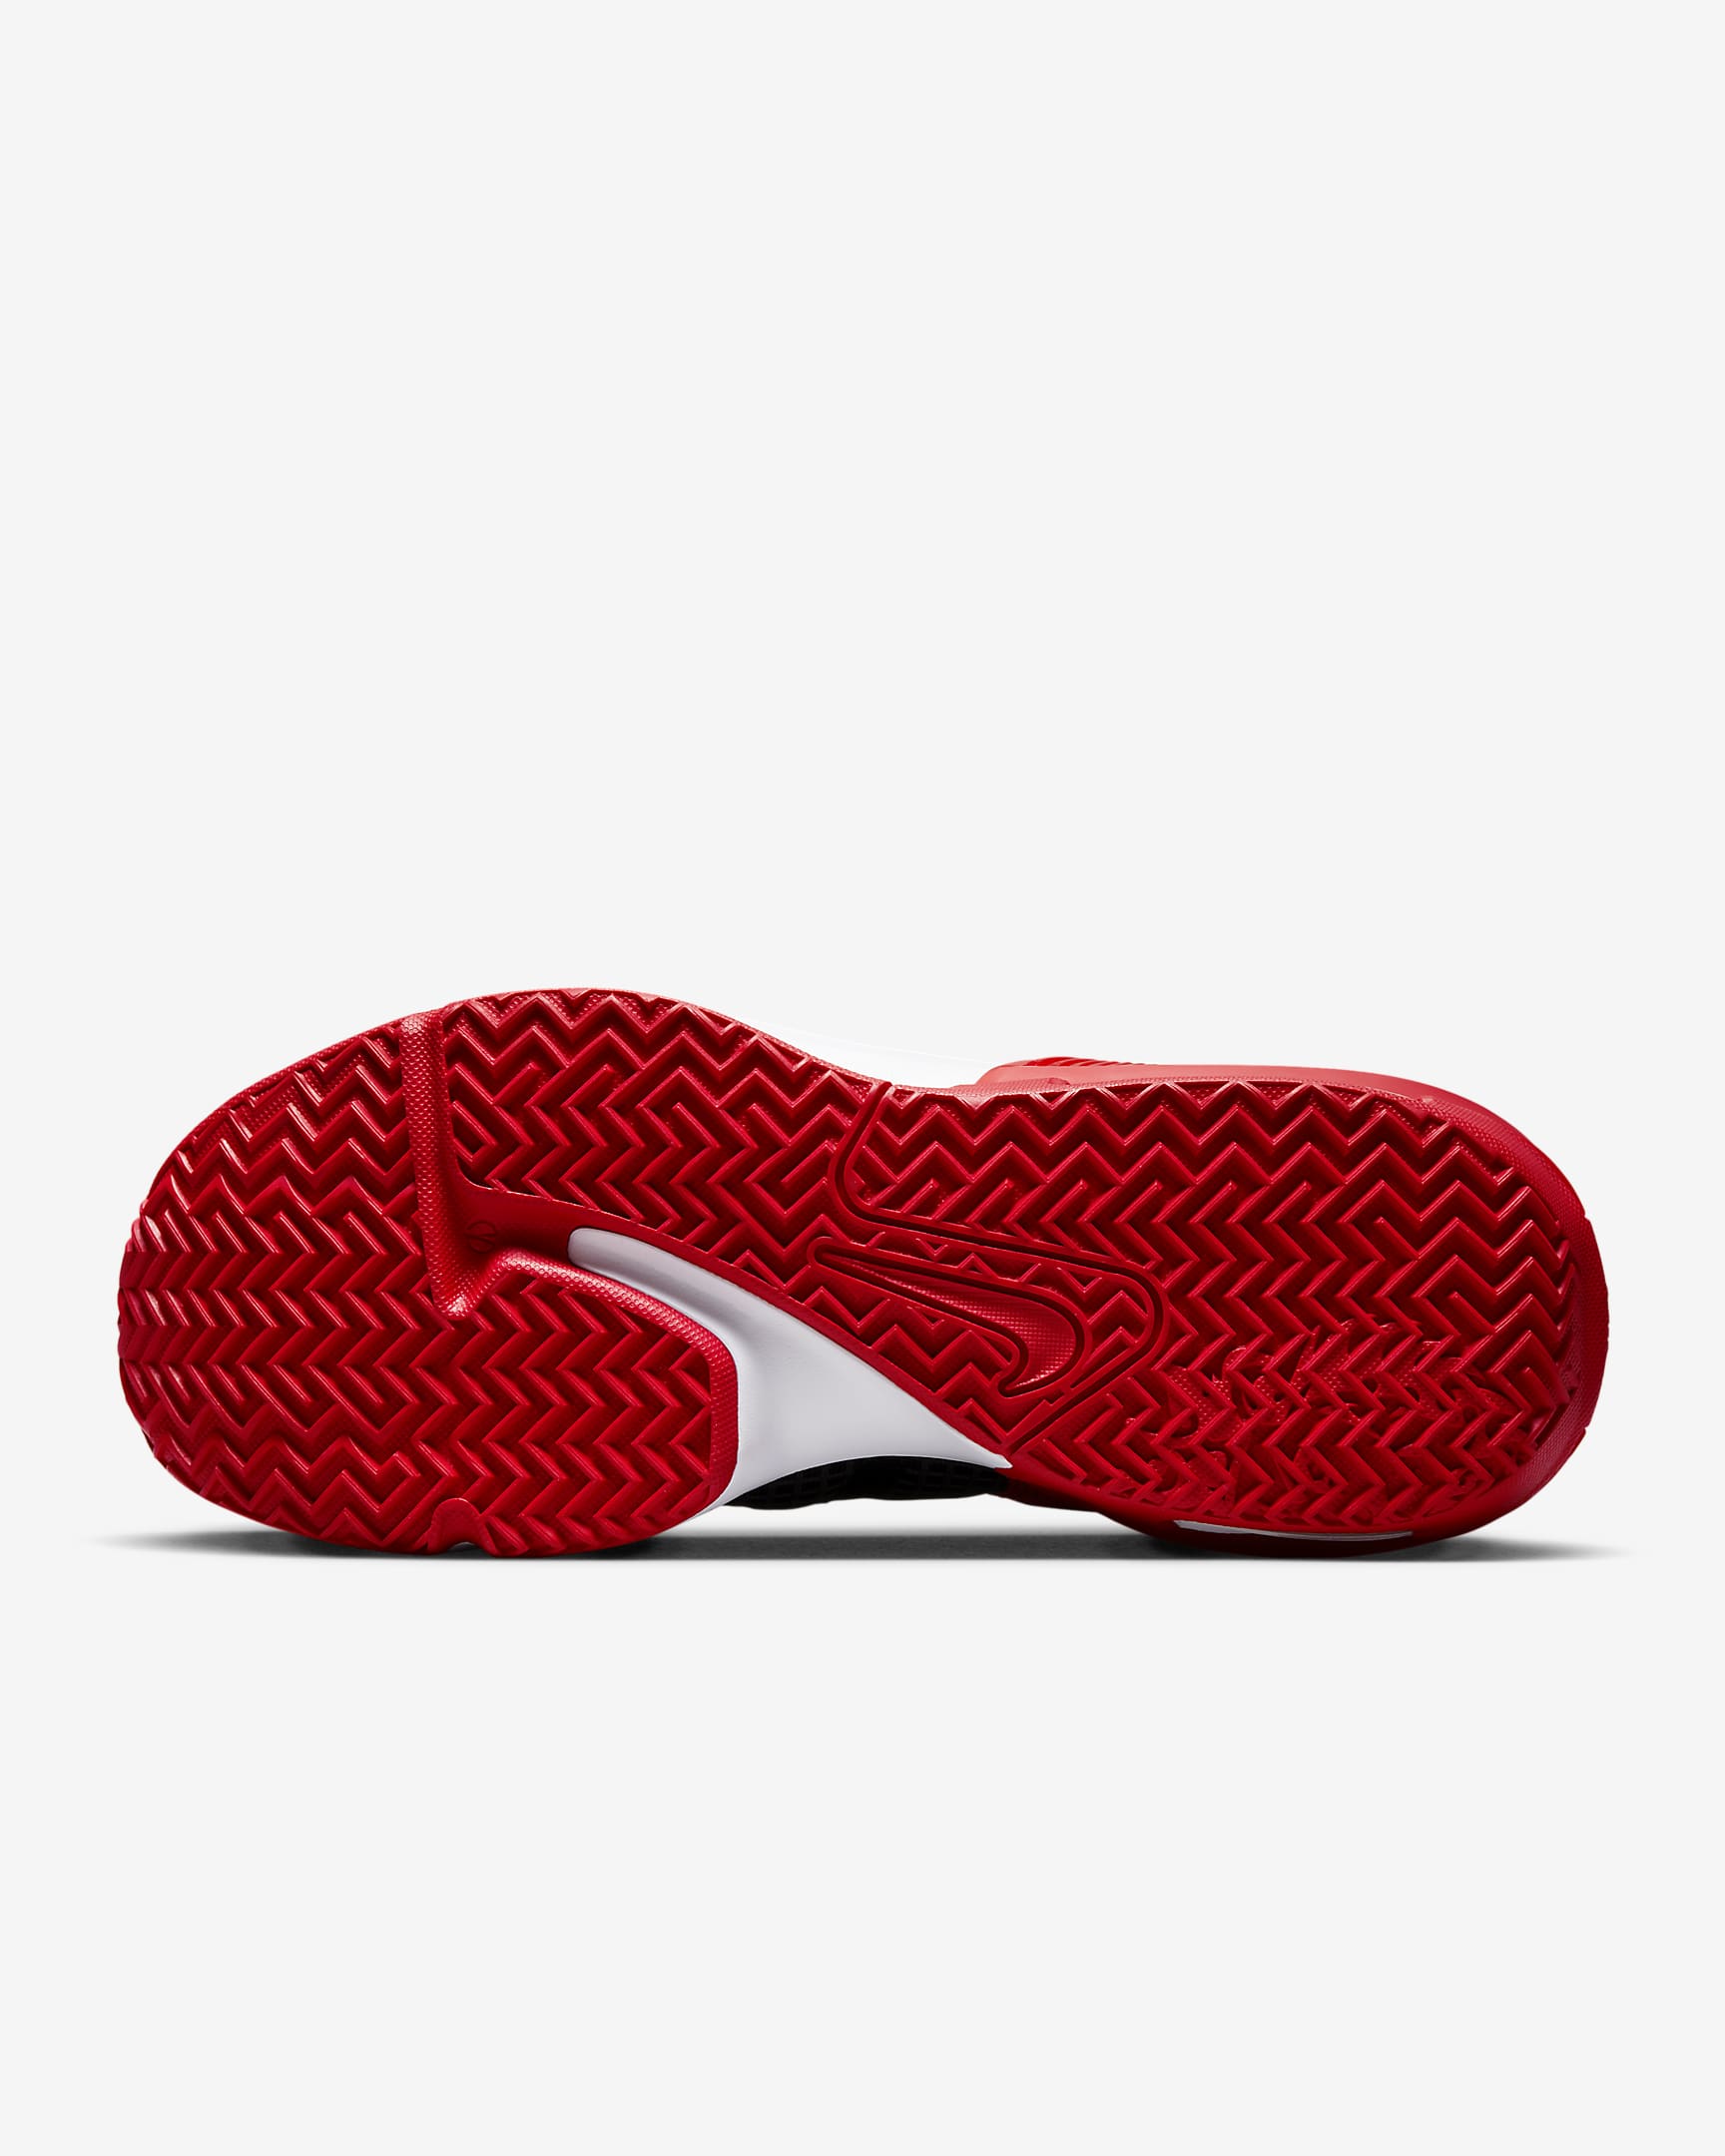 LeBron Witness 7 Basketball Shoes. Nike CA